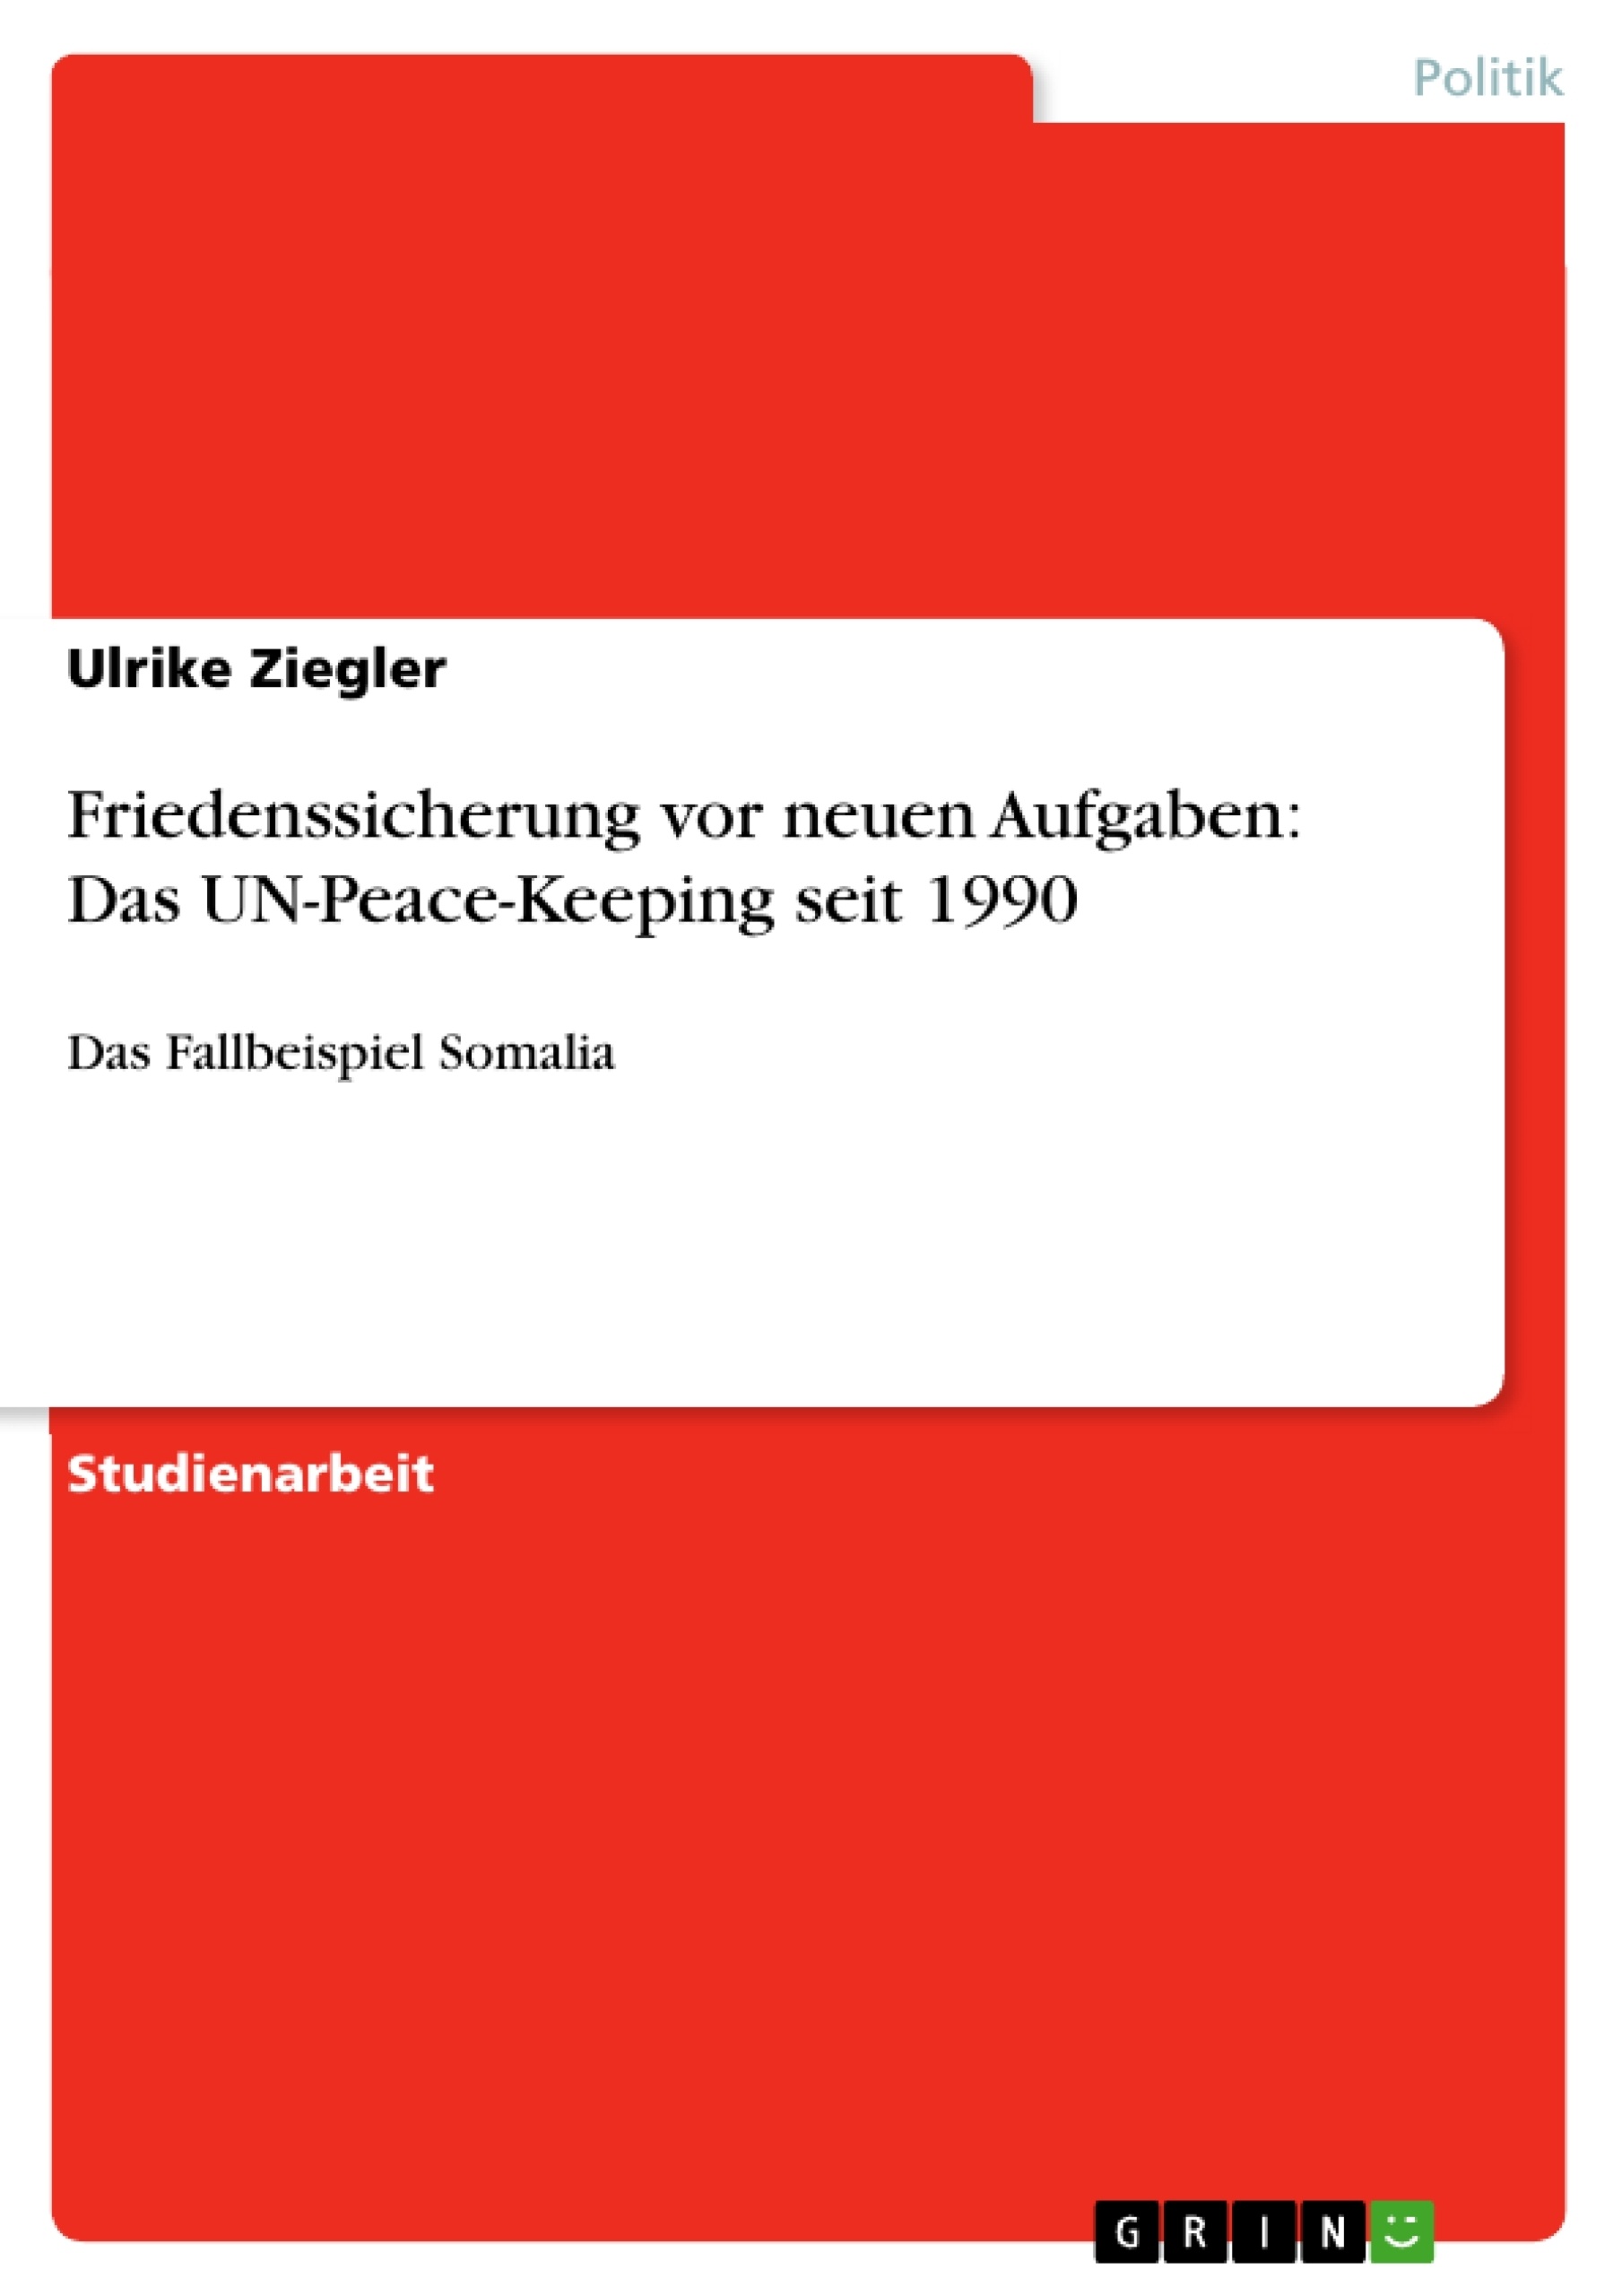 Titel: Friedenssicherung vor neuen Aufgaben: Das UN-Peace-Keeping seit 1990 